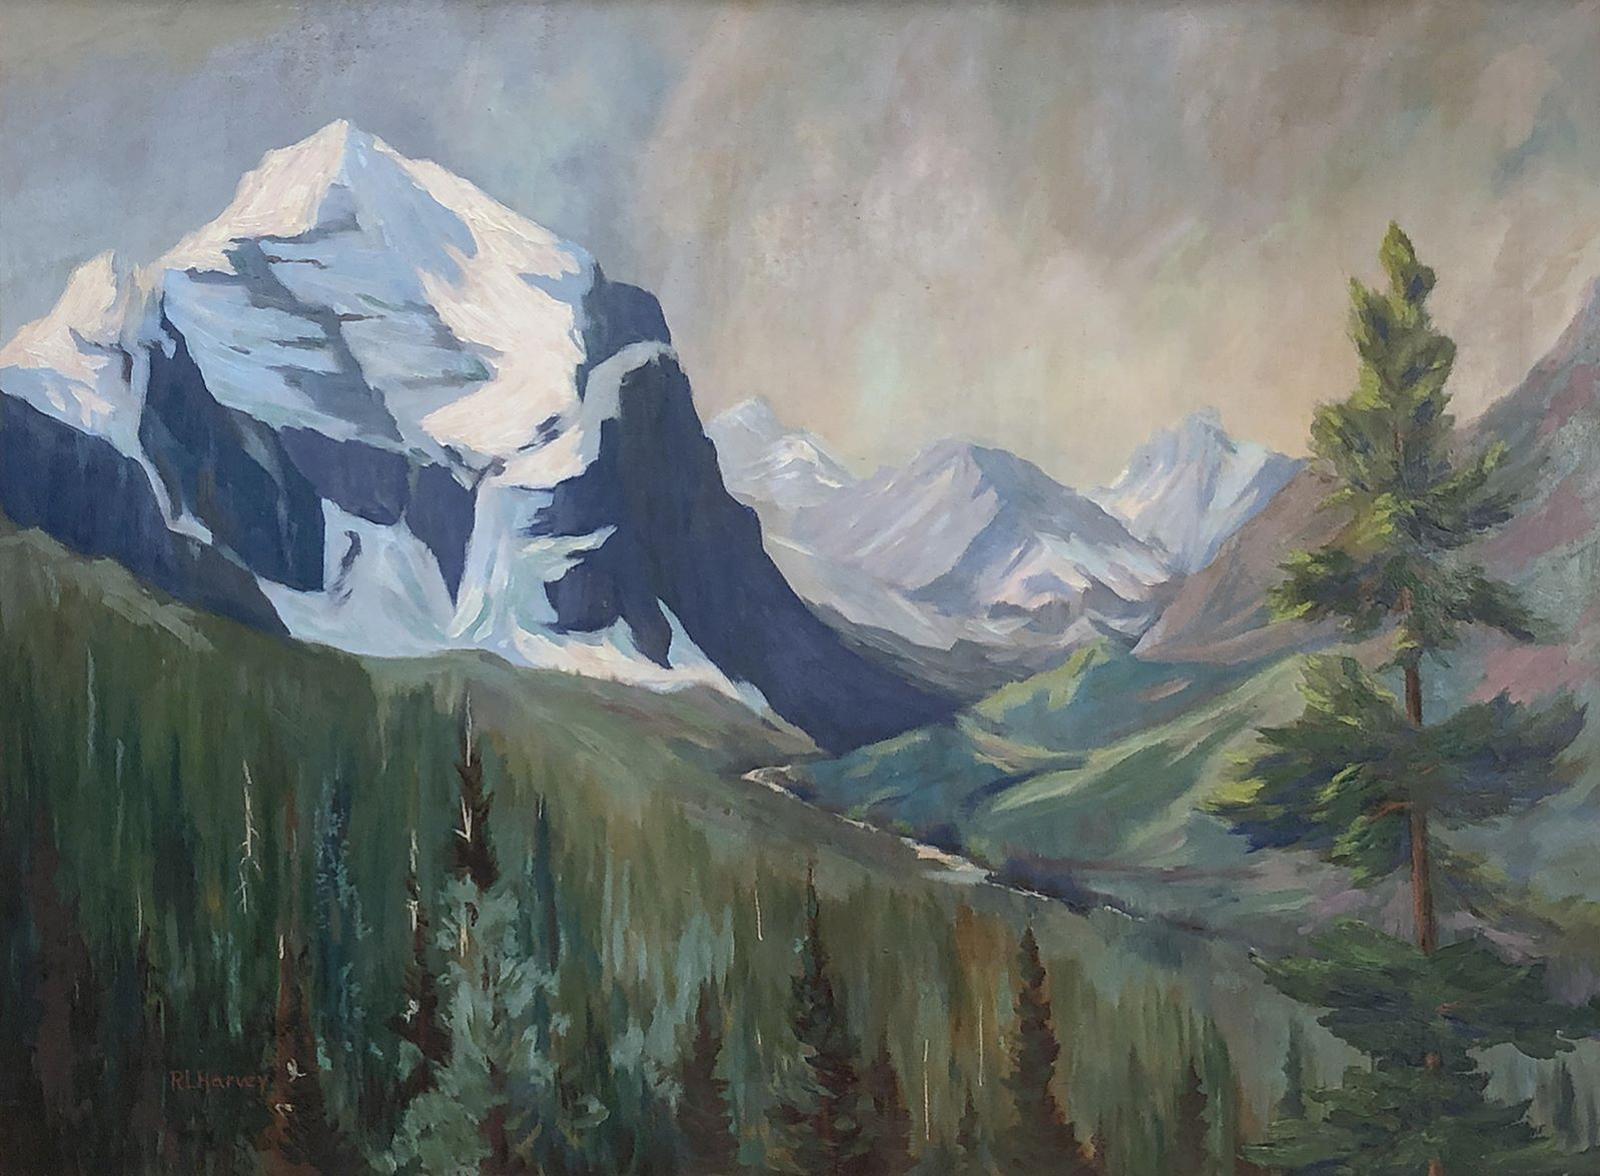 Reginald Llewellyn Harvey (1888-1963) - Throne Mountain